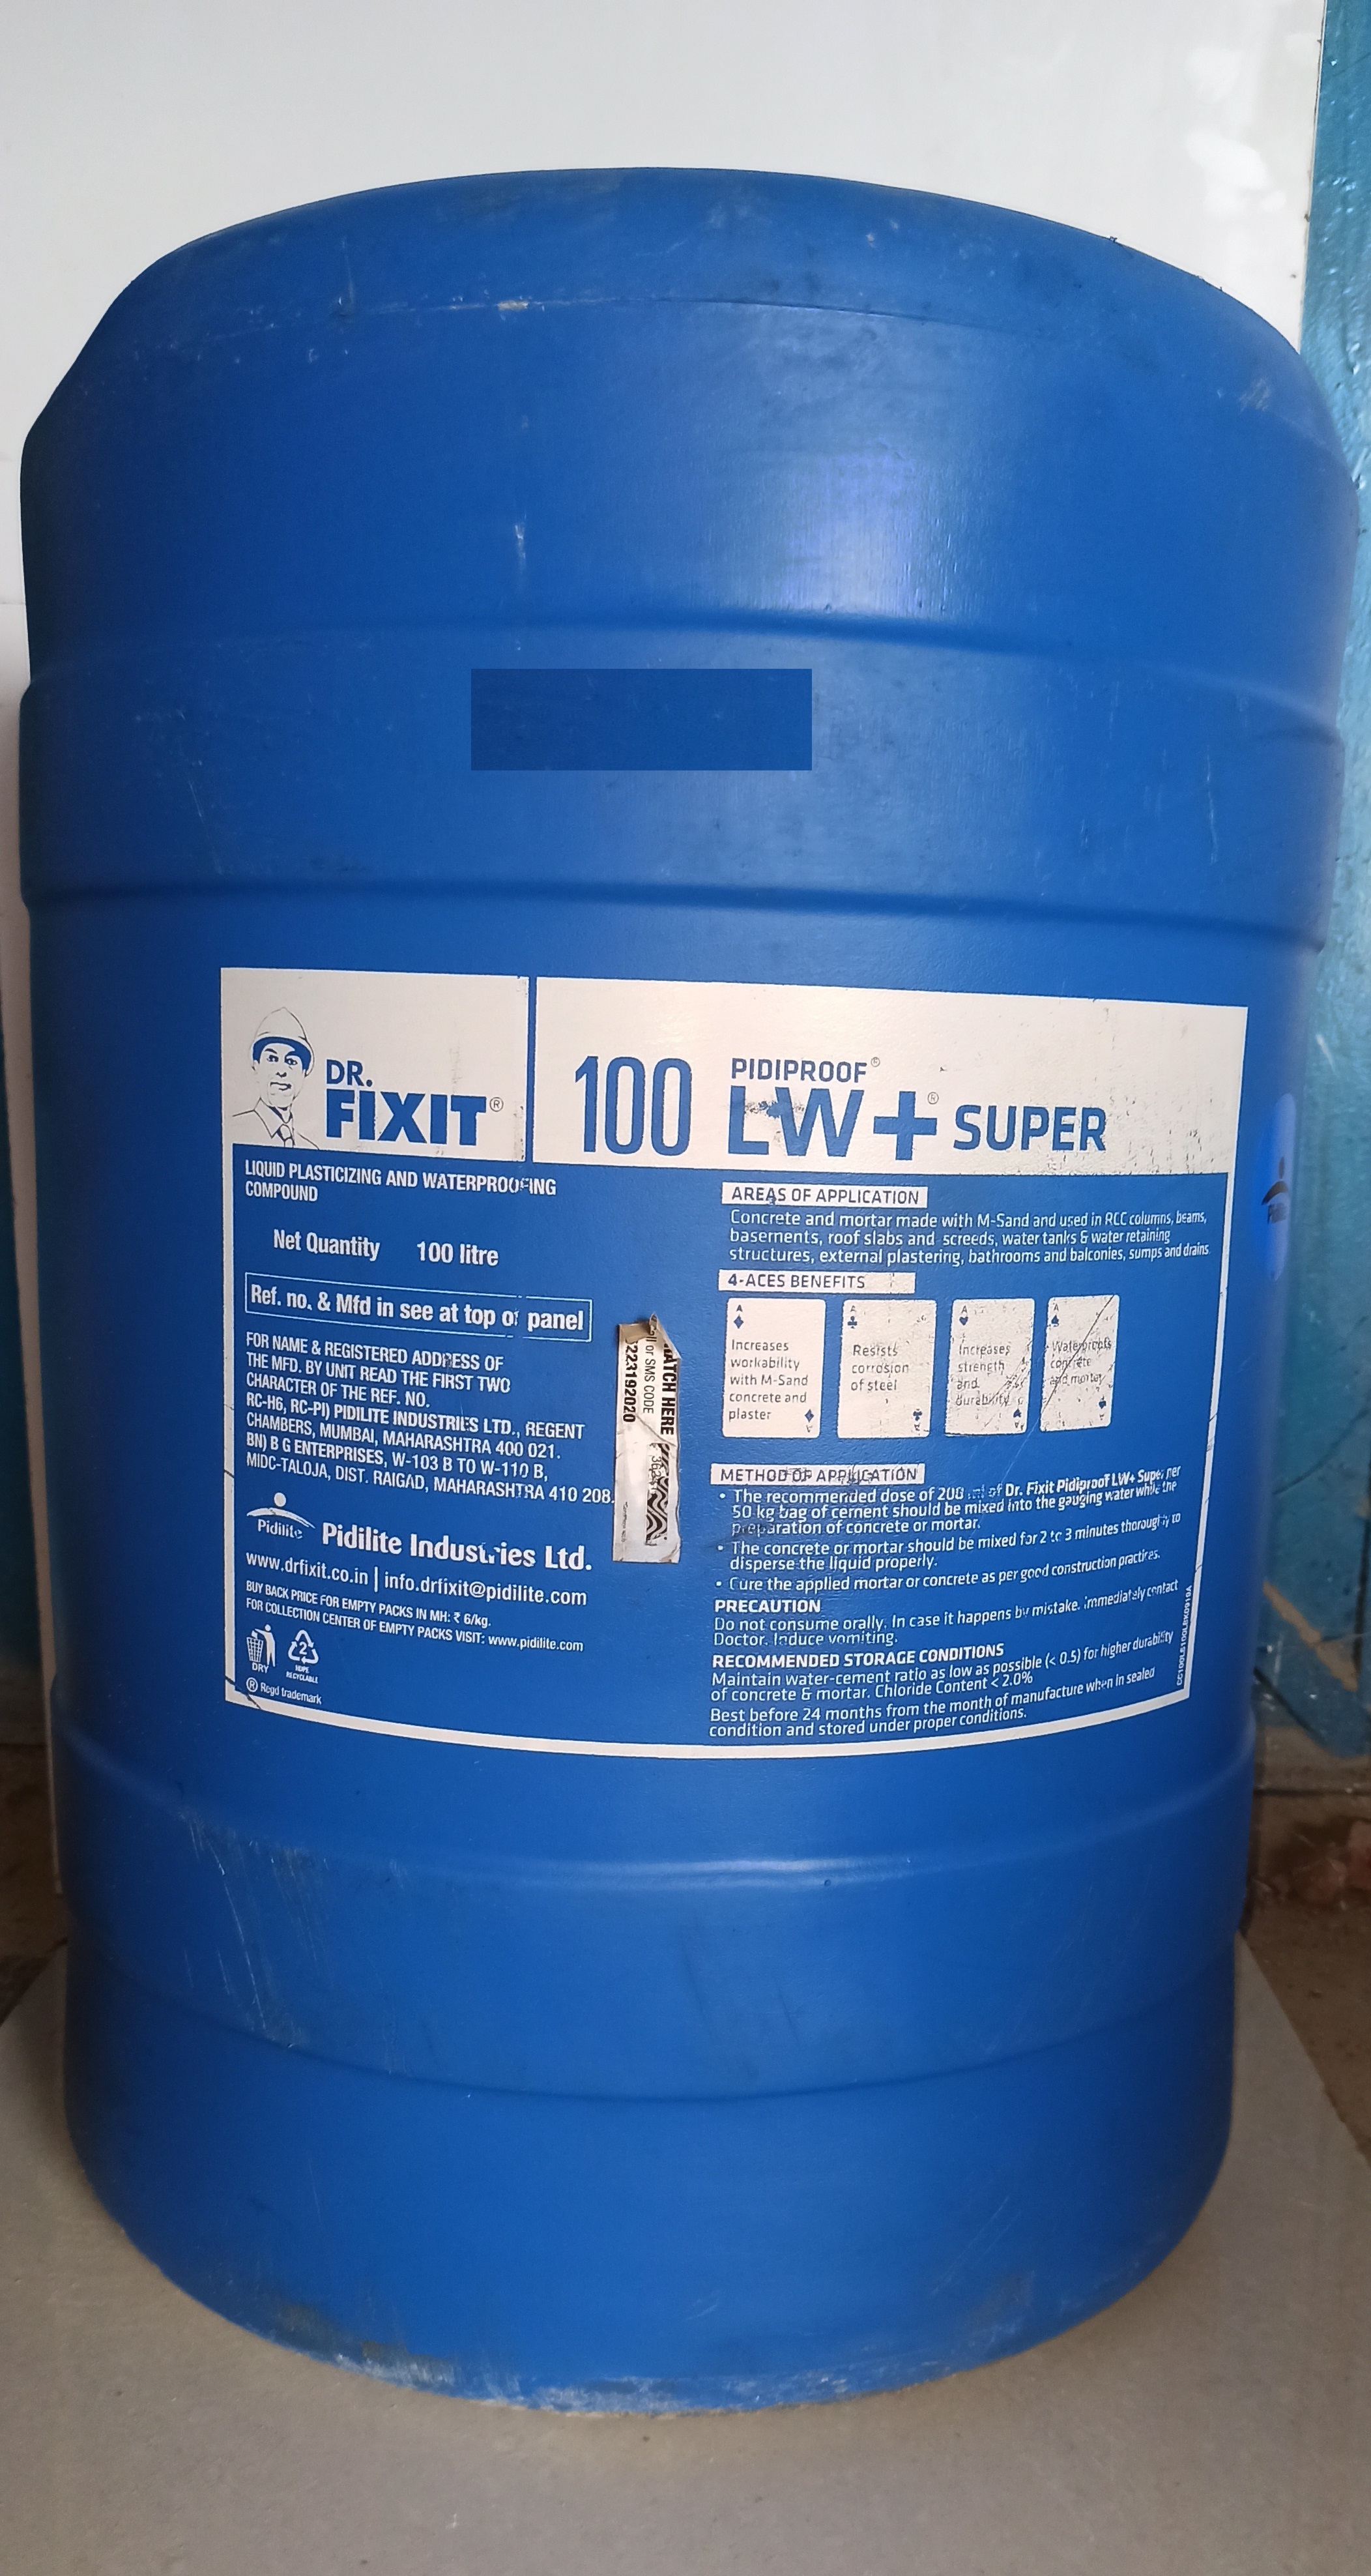 Dr. Fixit 100 Pidiproof Lw+ Super 50 Kg